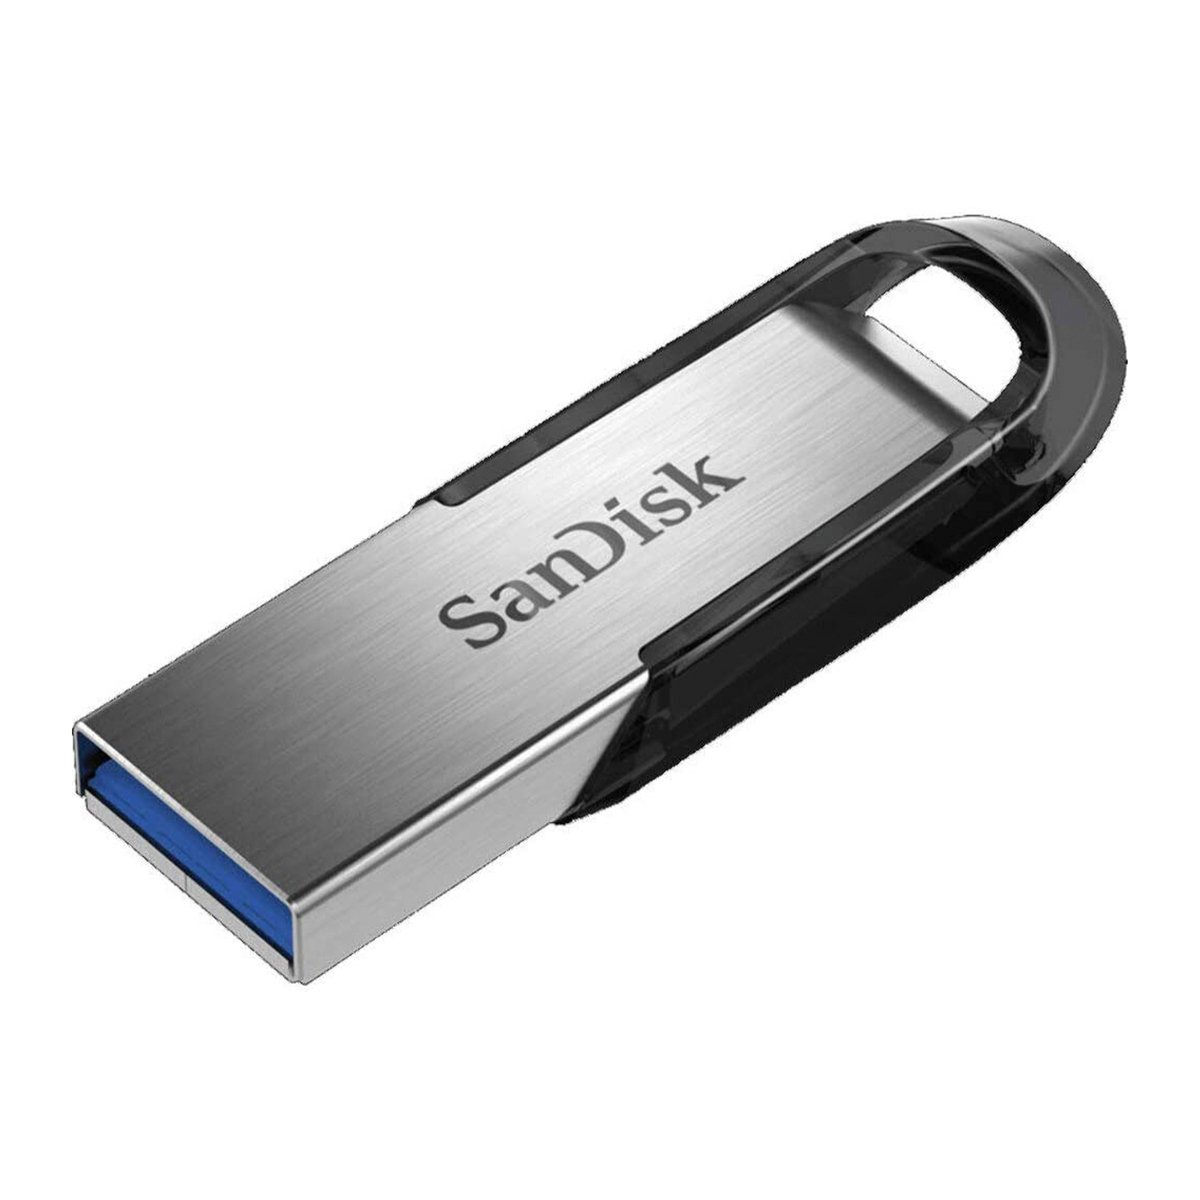 ذاكرة فلاش سانديسك الترا فلير 256 جيجابايت USB 3.0